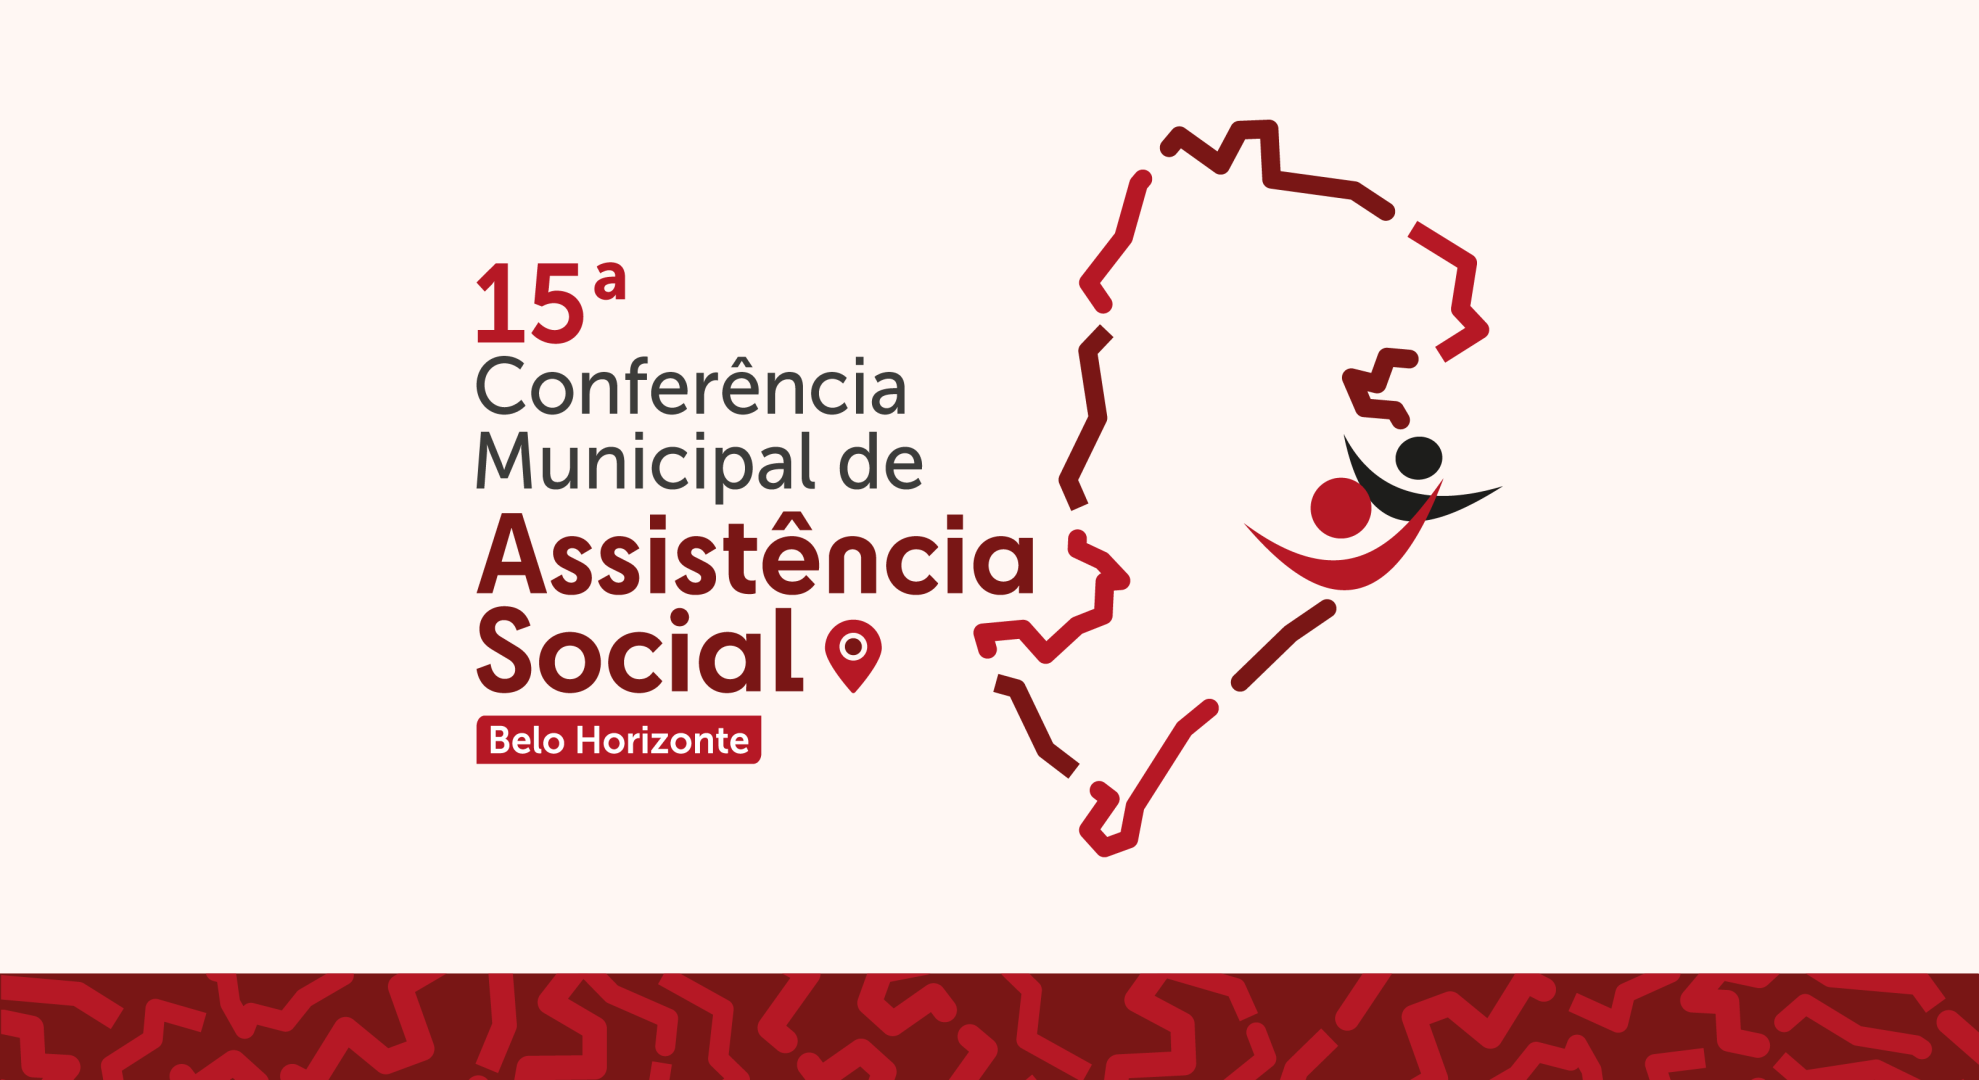 Imagem gráfica do logo da 15ª Conferência Municipal de Assistência Social de Belo Horizonte, composta por um ícone, nas cores preto e vermelho com um tracejado do mapa de belo horizonte e dois símbolos de pessoas de braços abertos